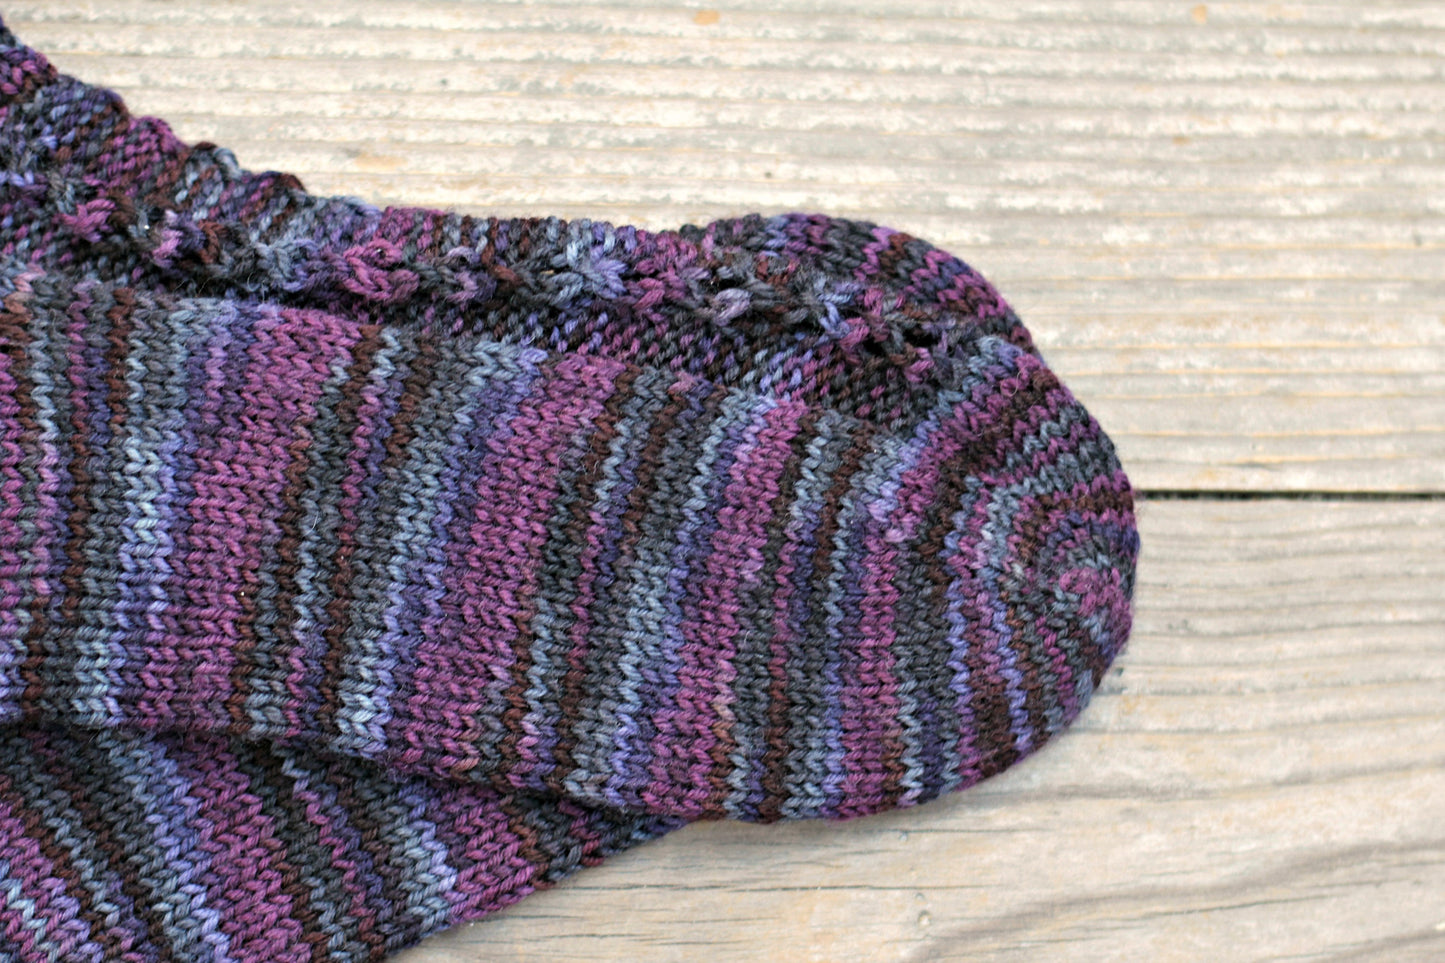 Knit socks for women in multicolor purple shades, wool socks